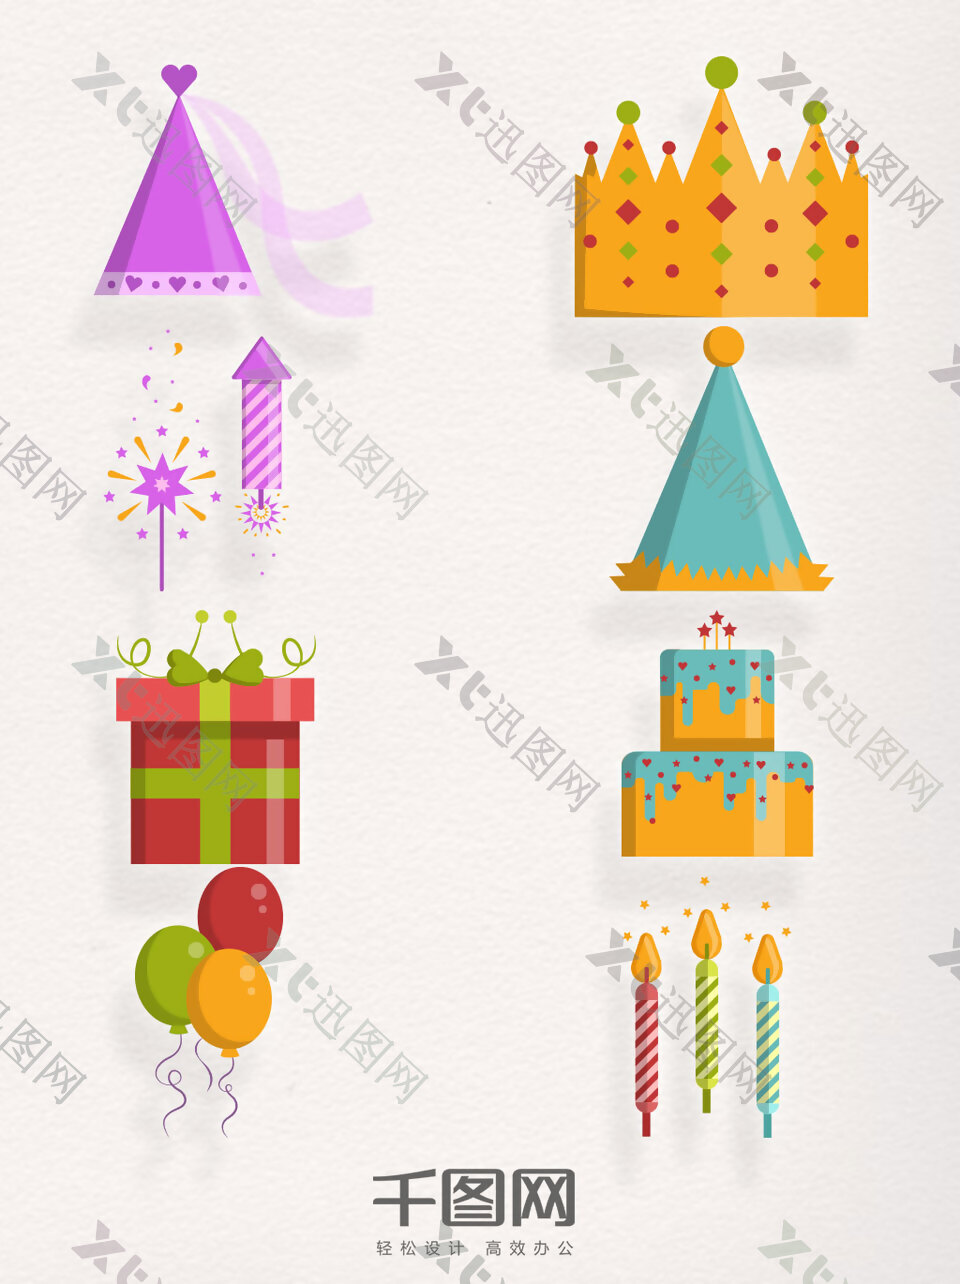 矢量素材生日类元素庆祝生日装饰图案集合